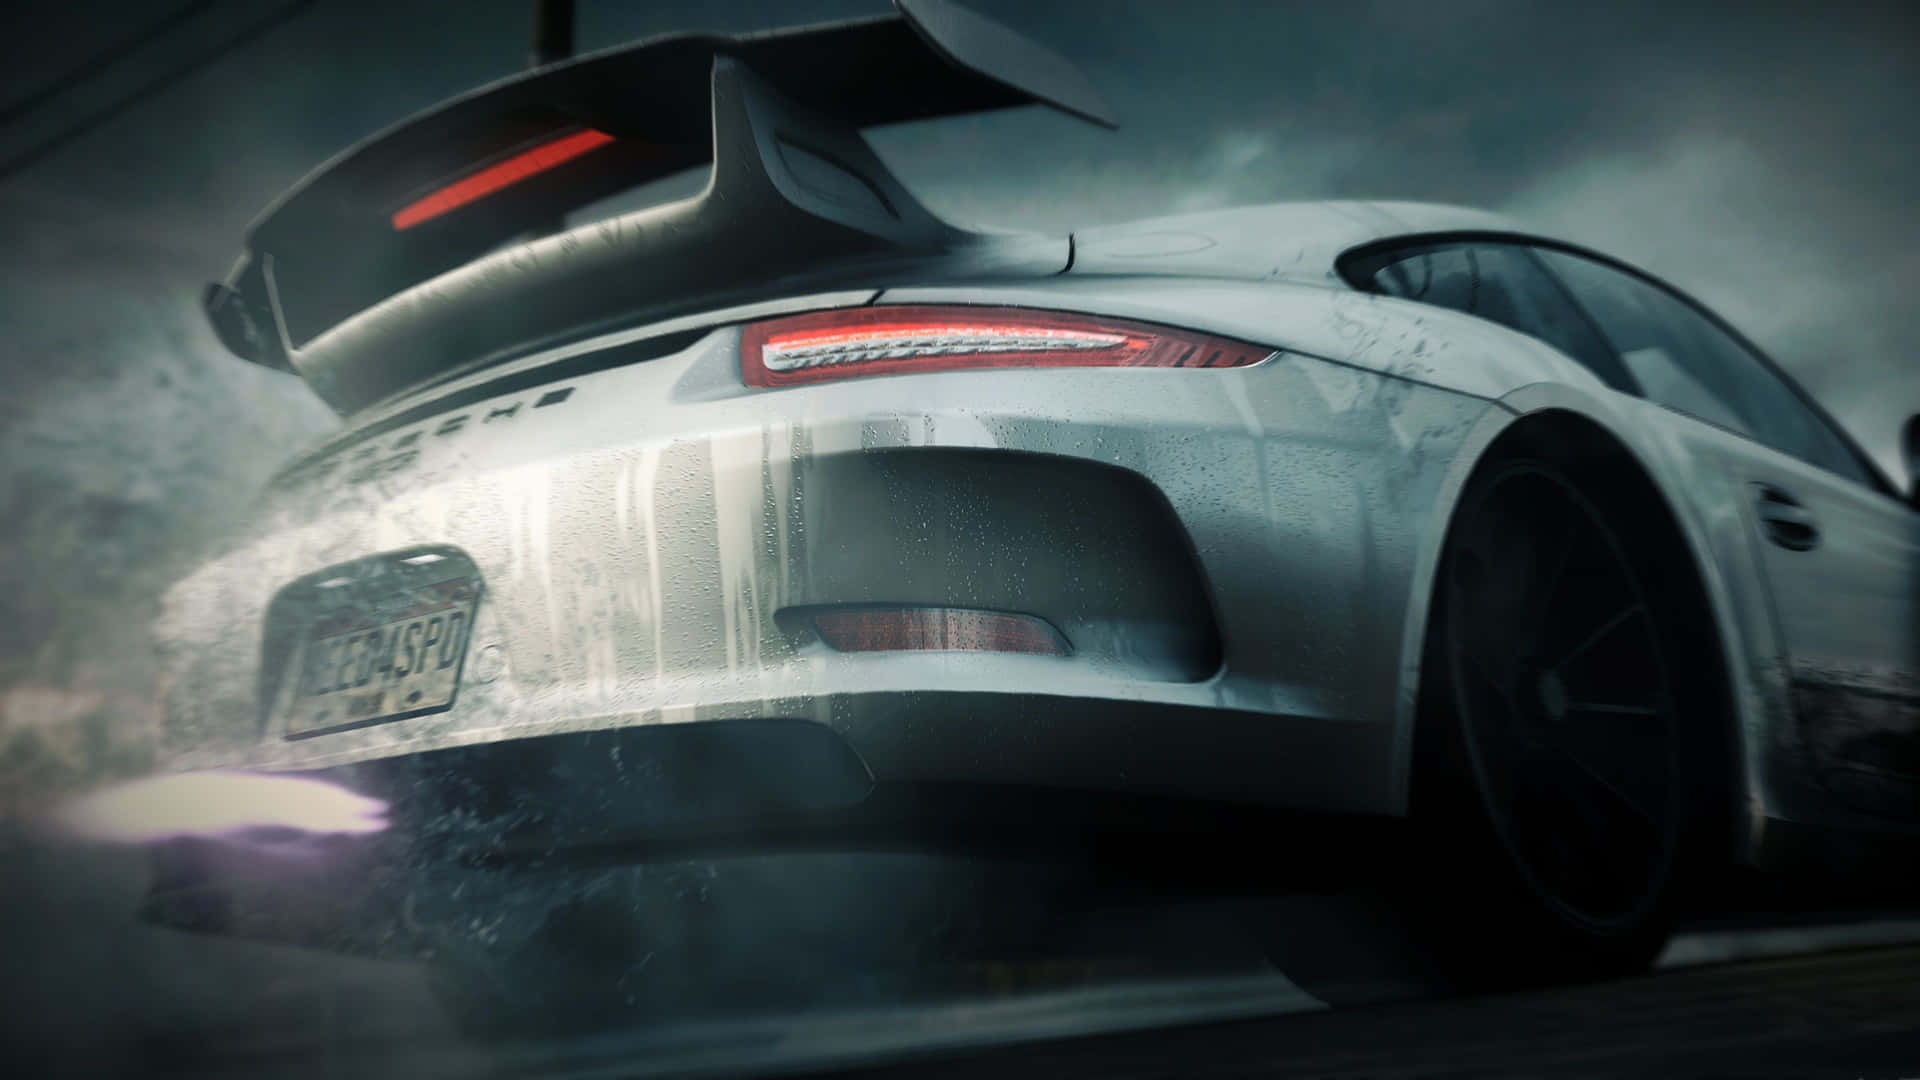 Erlebensie Ein Elektrisierendes Need For Speed Abenteuer In 4k Auflösung. Wallpaper